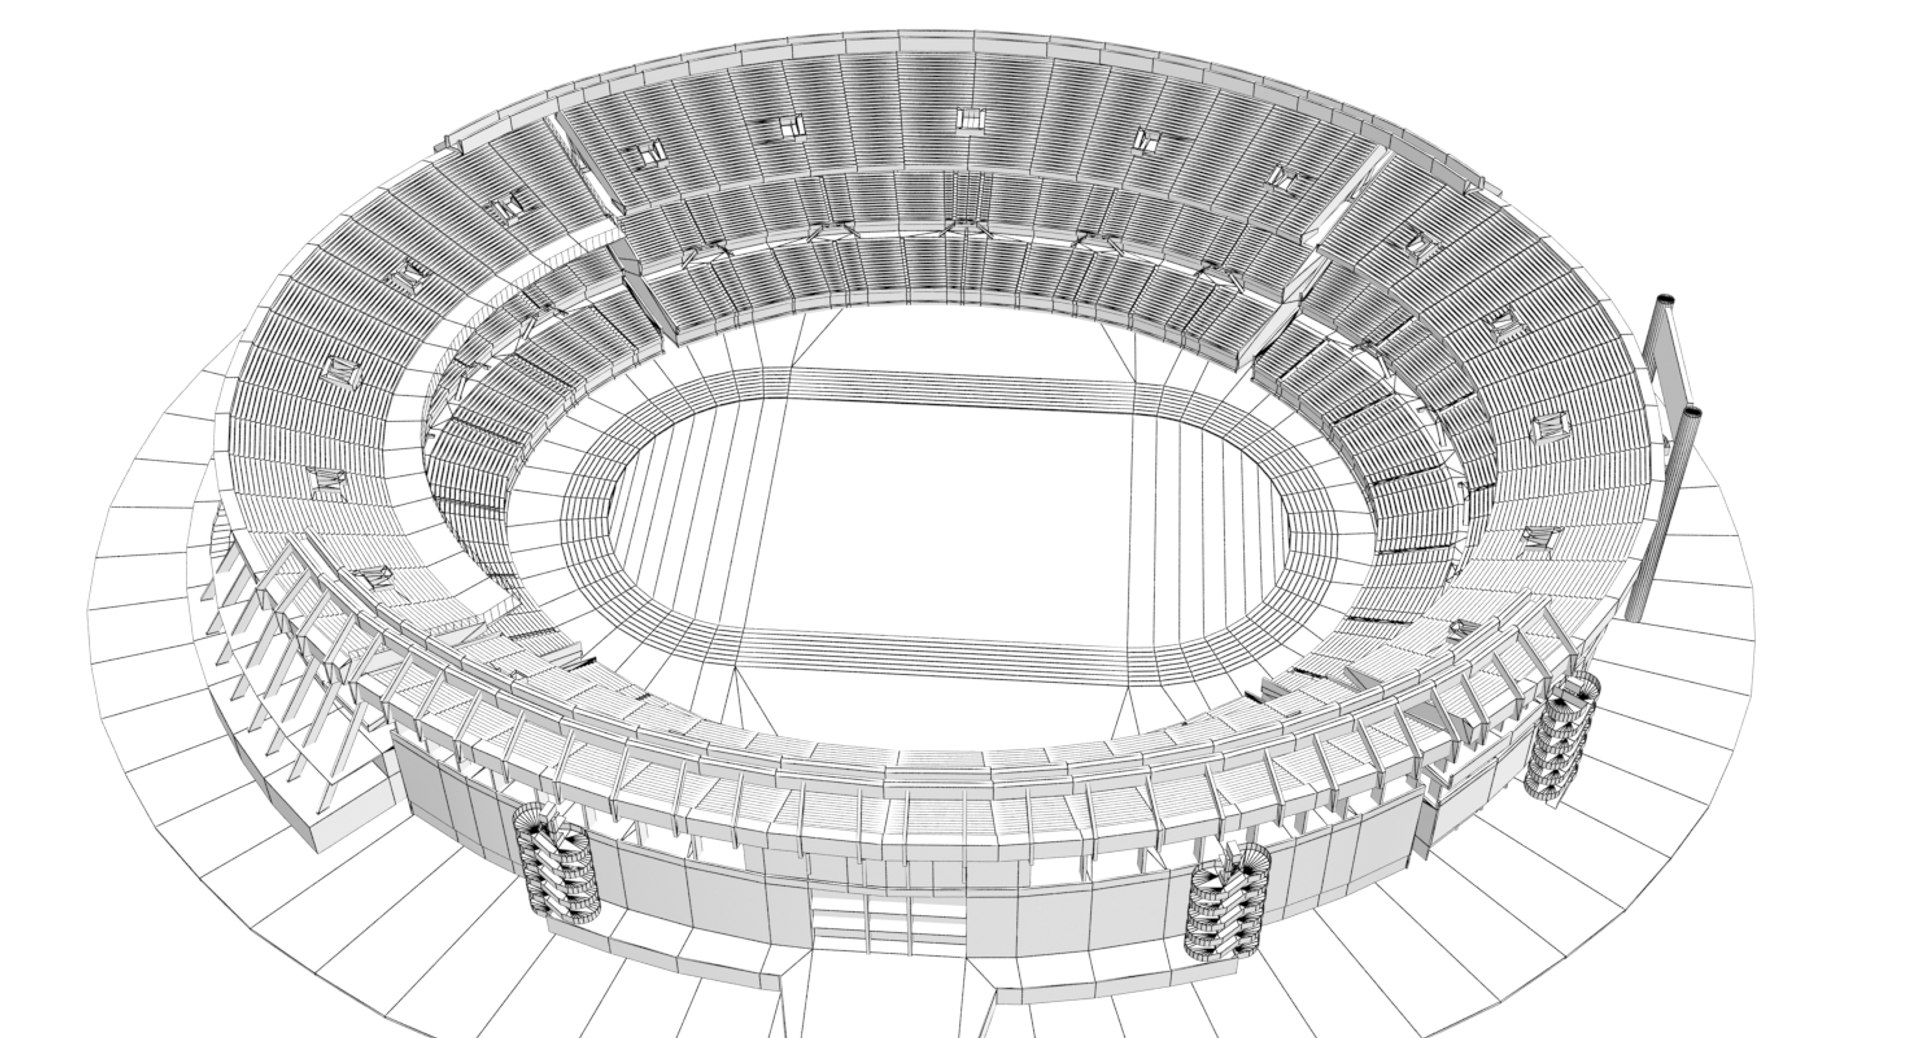 Estadio monumental antonio vespucio 3D model - TurboSquid 1438213